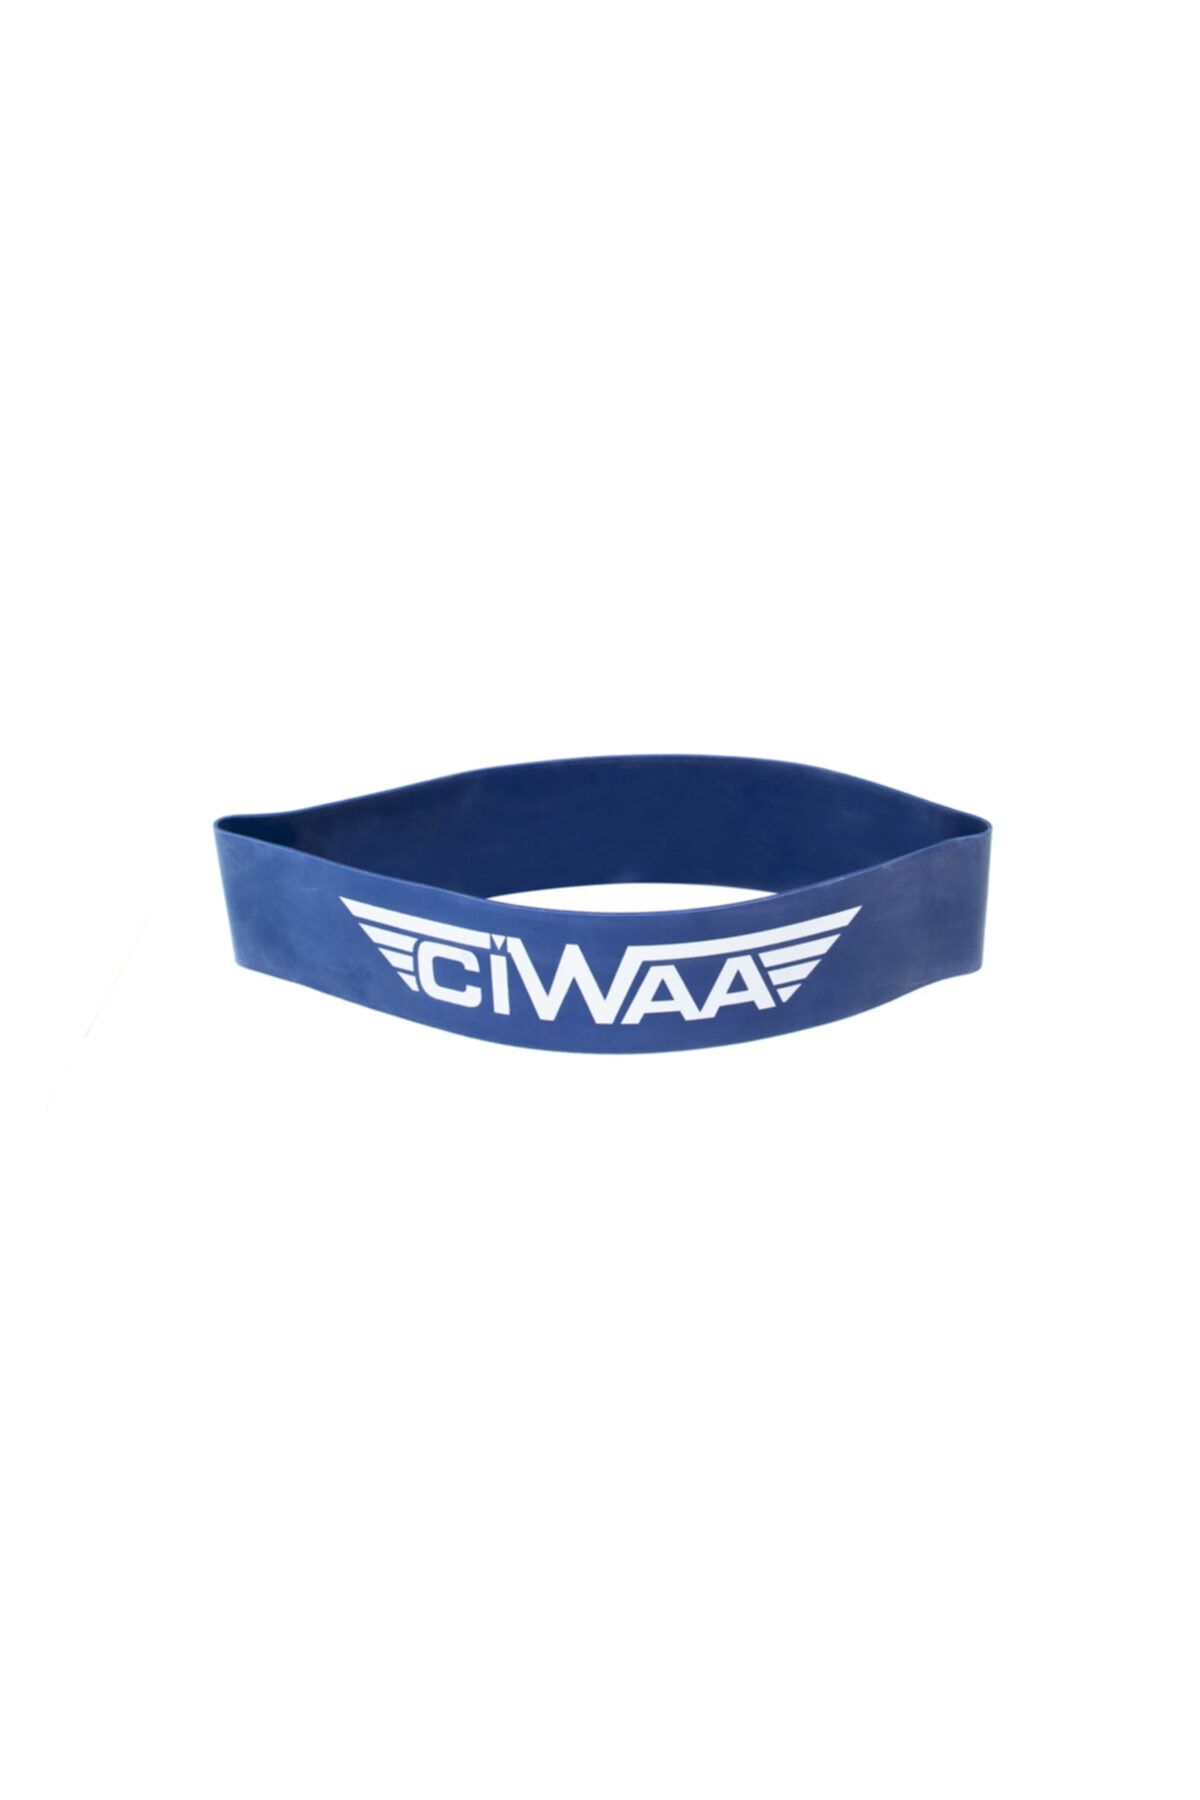 Ciwaa Cwa-2013 Sert Lacivert Latex Aerobik Bandı